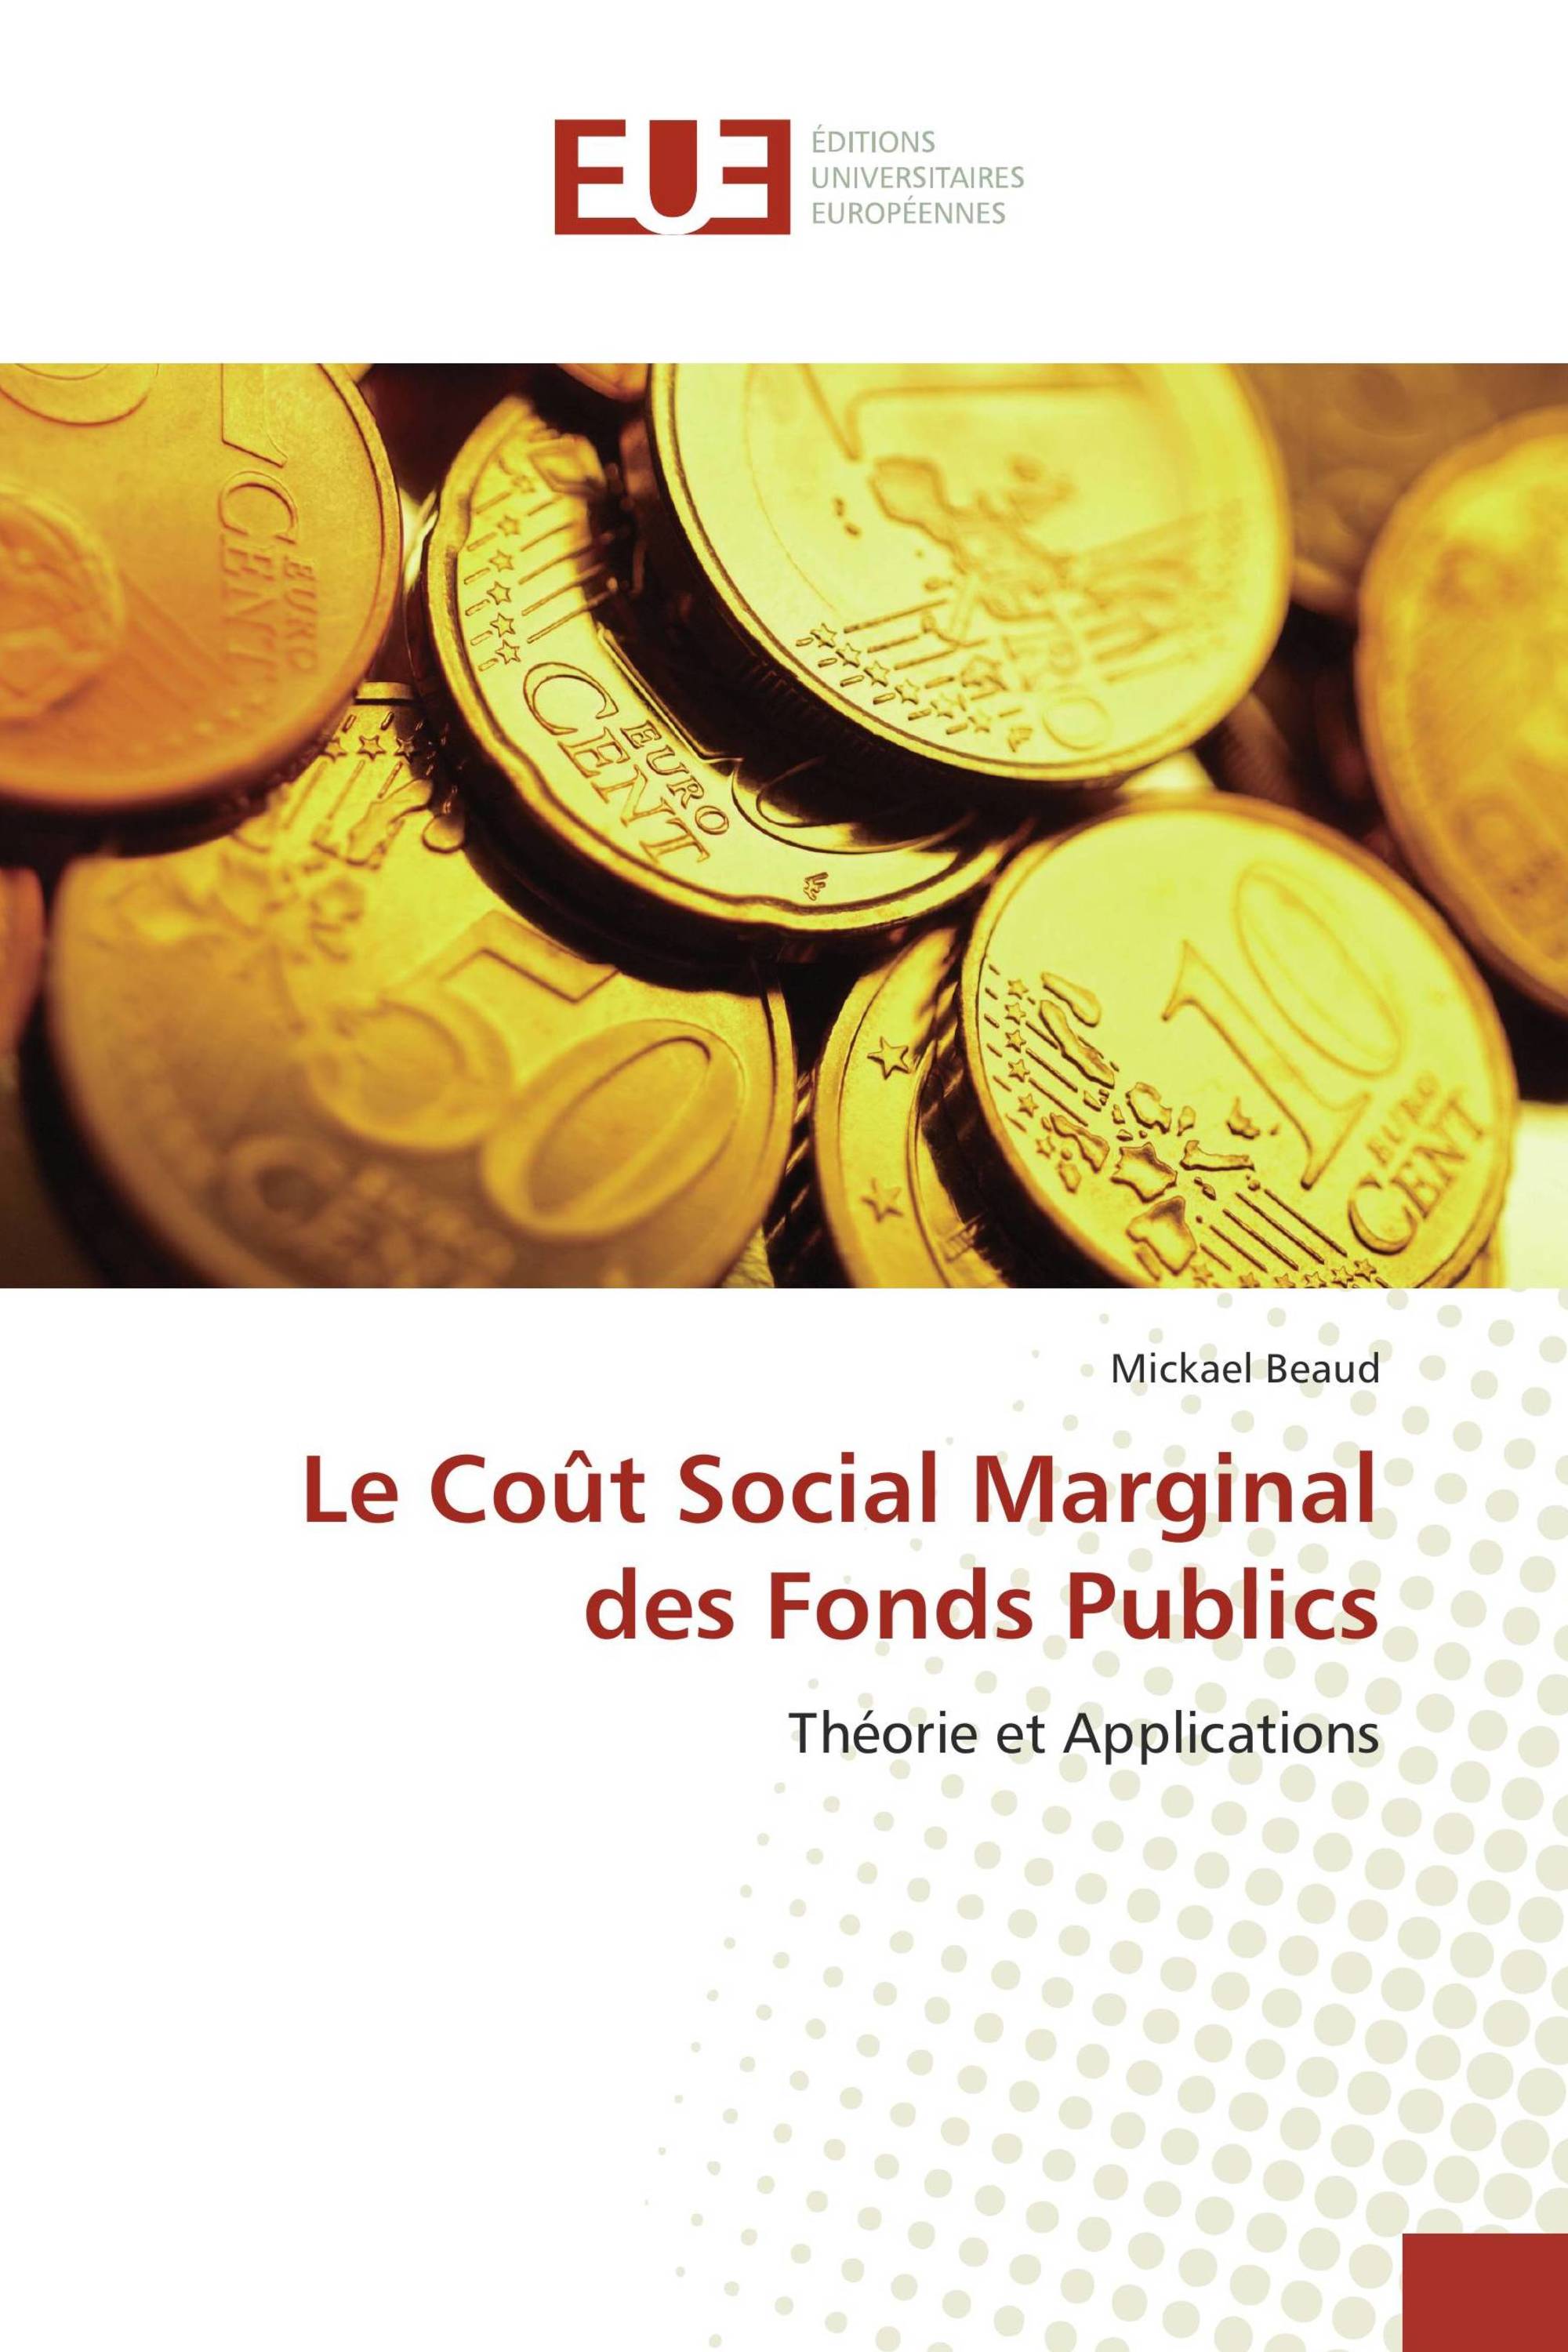 Le Coût Social Marginal des Fonds Publics